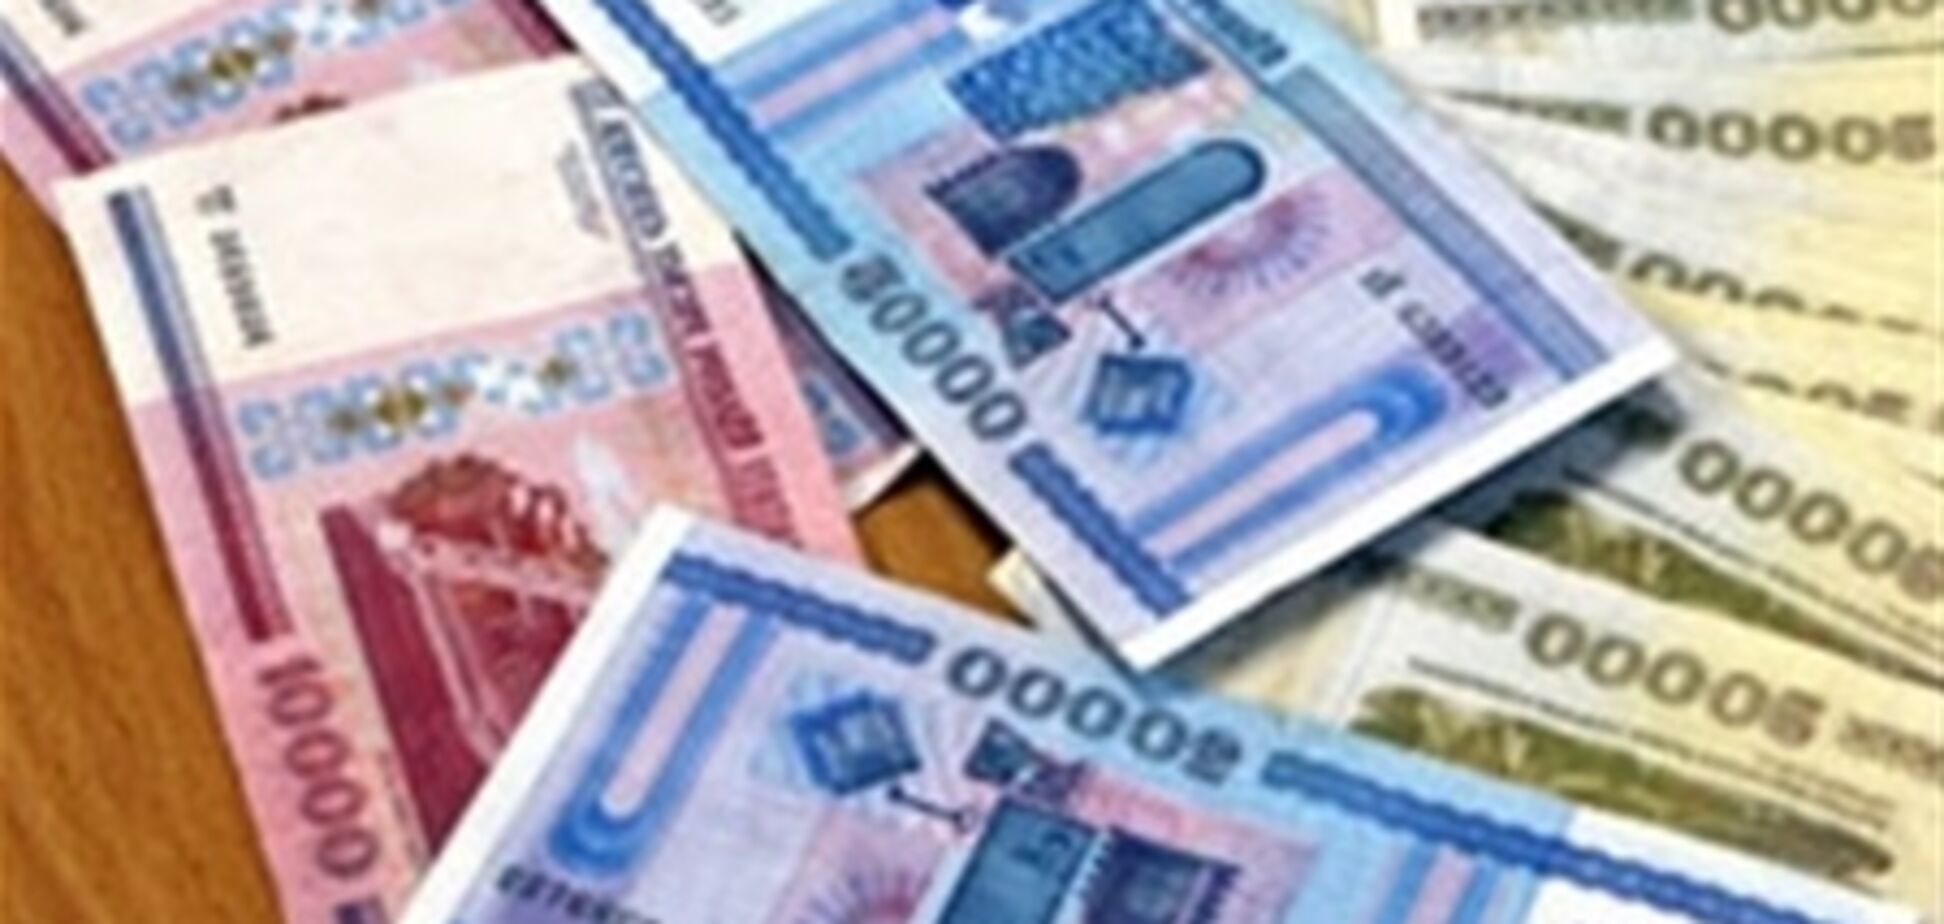 Нацбанк Беларуси признал девальвацию своего рубля на 75%